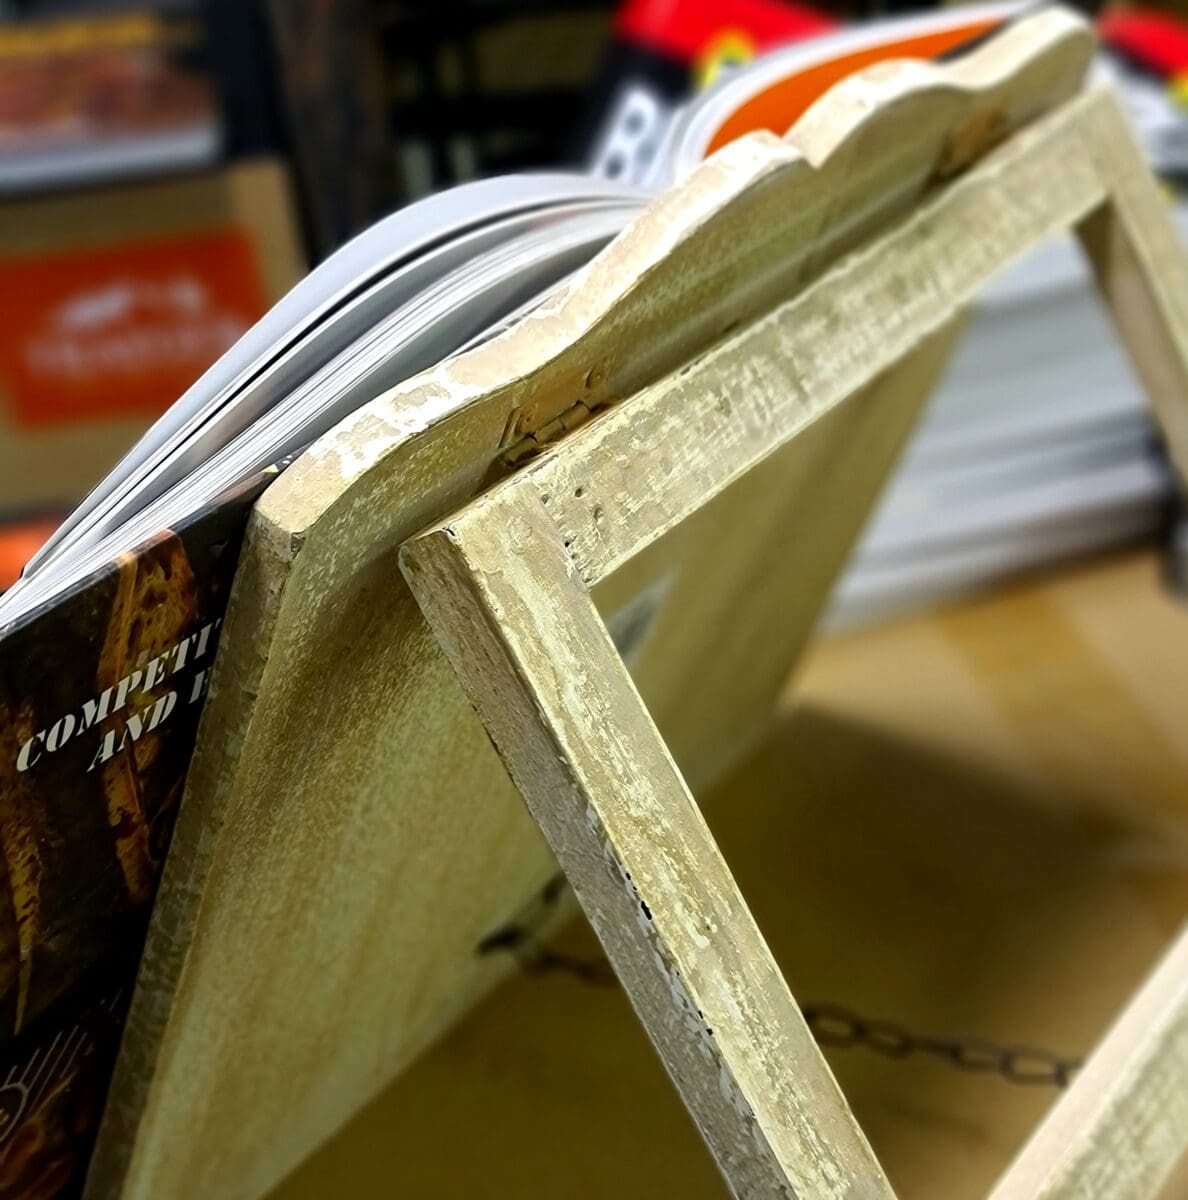 Kokbokshållare - bokhållare som håller receptboken öppen - snyggt och praktiskt - shabby chic style Kokbokshållaren är en bokhållare i läcker ljus shabby chic style, gjord av trä. Denna hållare kan användas för alla böcker och funktionen är given - bättre överblick och mindre kladdande på sidorna då bokhållaren förhindrar att boken stängs ihop. En snygg inredningsdetalj som passar perfekt i kök, inte minst om du gillar en lantlig stil eller shabby chic style.